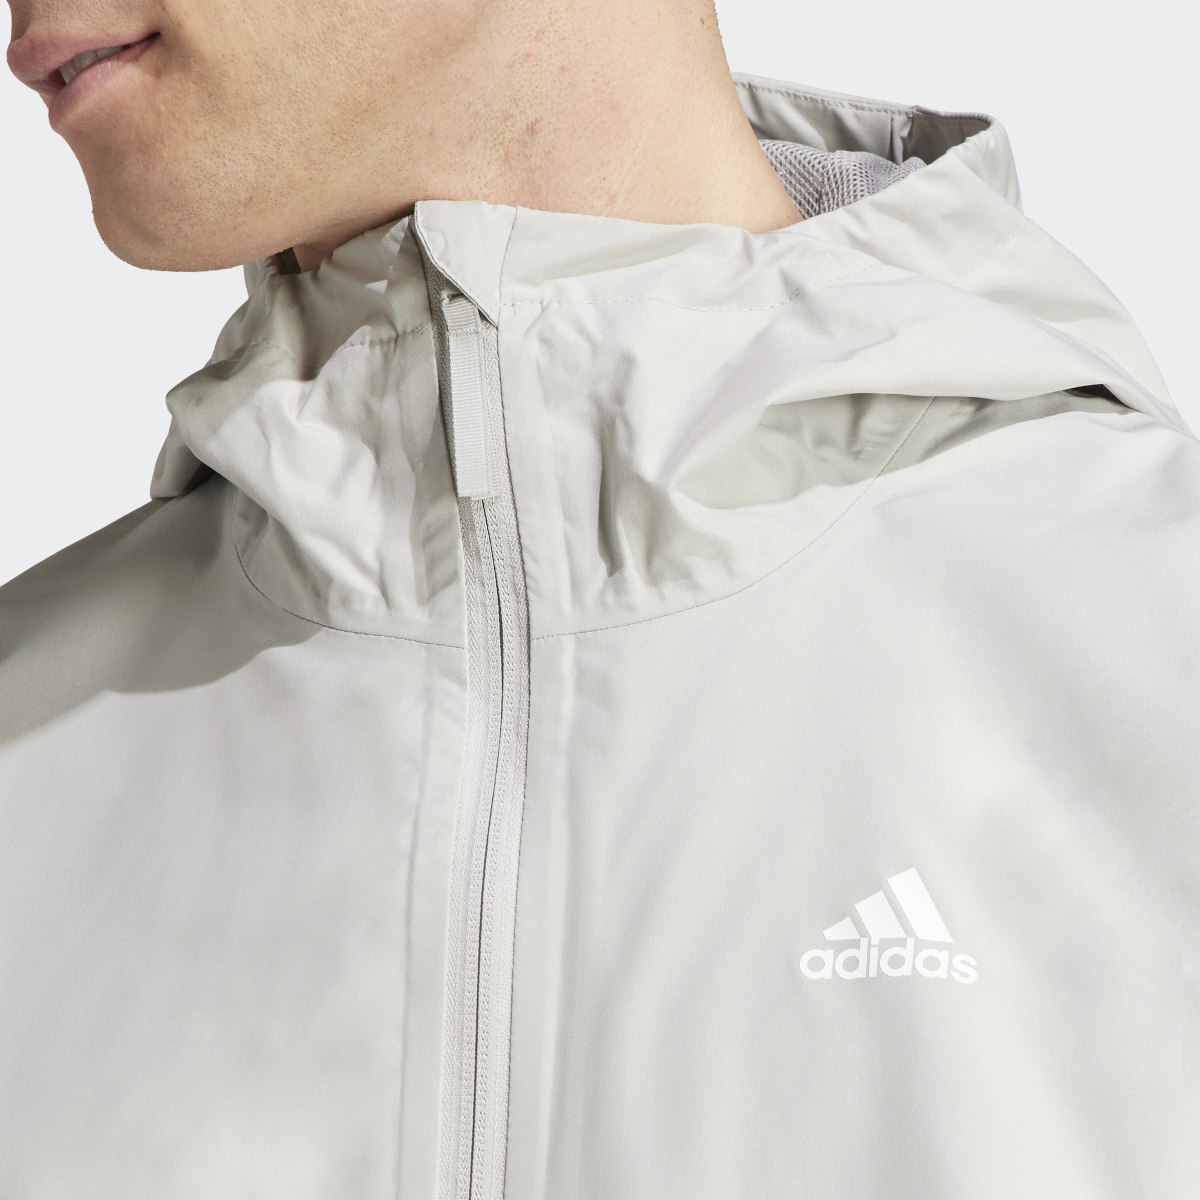 Adidas Essentials RAIN.RDY Jacket. 7